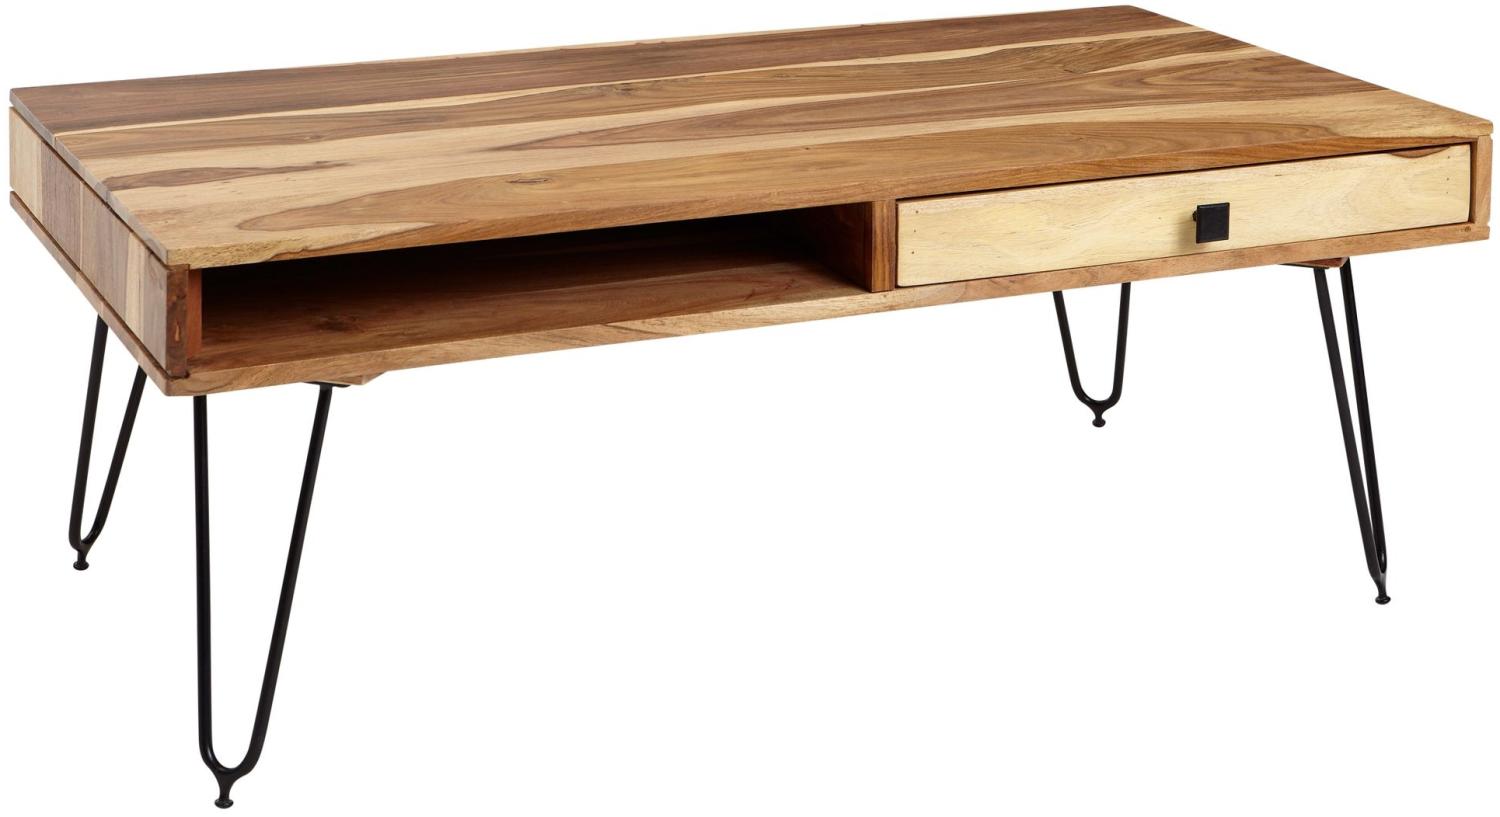 KADIMA DESIGN Couchtisch BALU Massivholz - Handgefertigt, mit Schubfächern und Metallfüßen. Farbe: Beige Bild 1